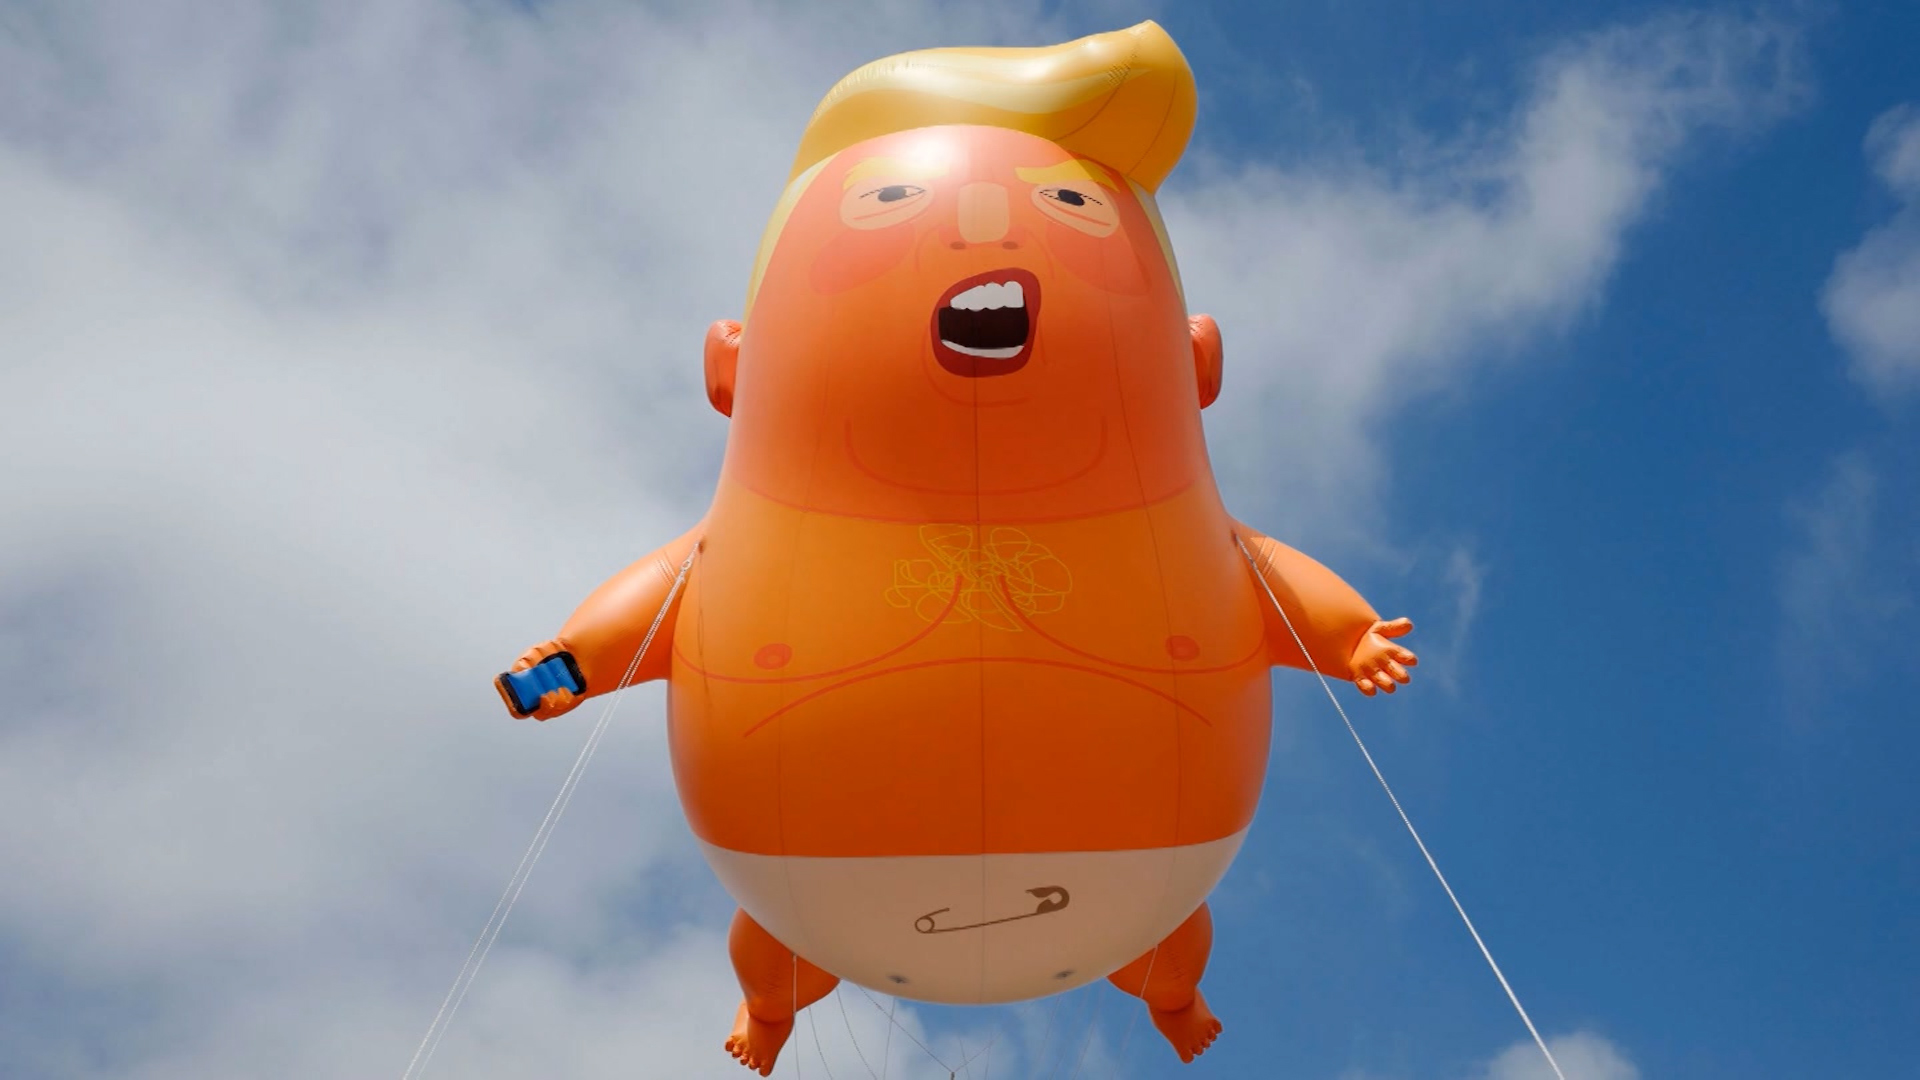 190702170740-trump-baby-balloon-washingt